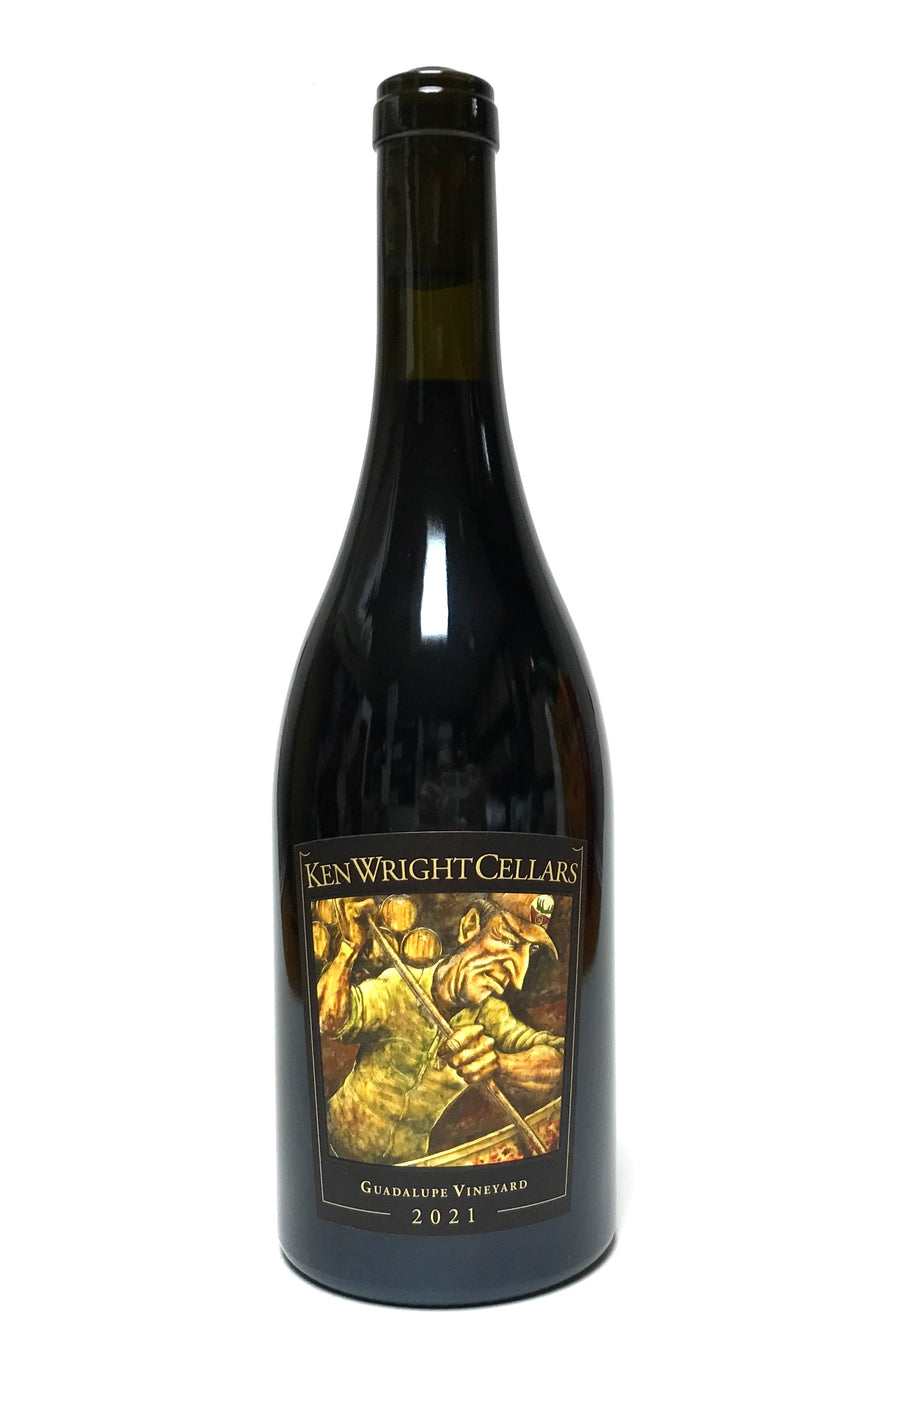 Ken Wright Cellars 2021 Pinot Noir Guadalupe Vineyard